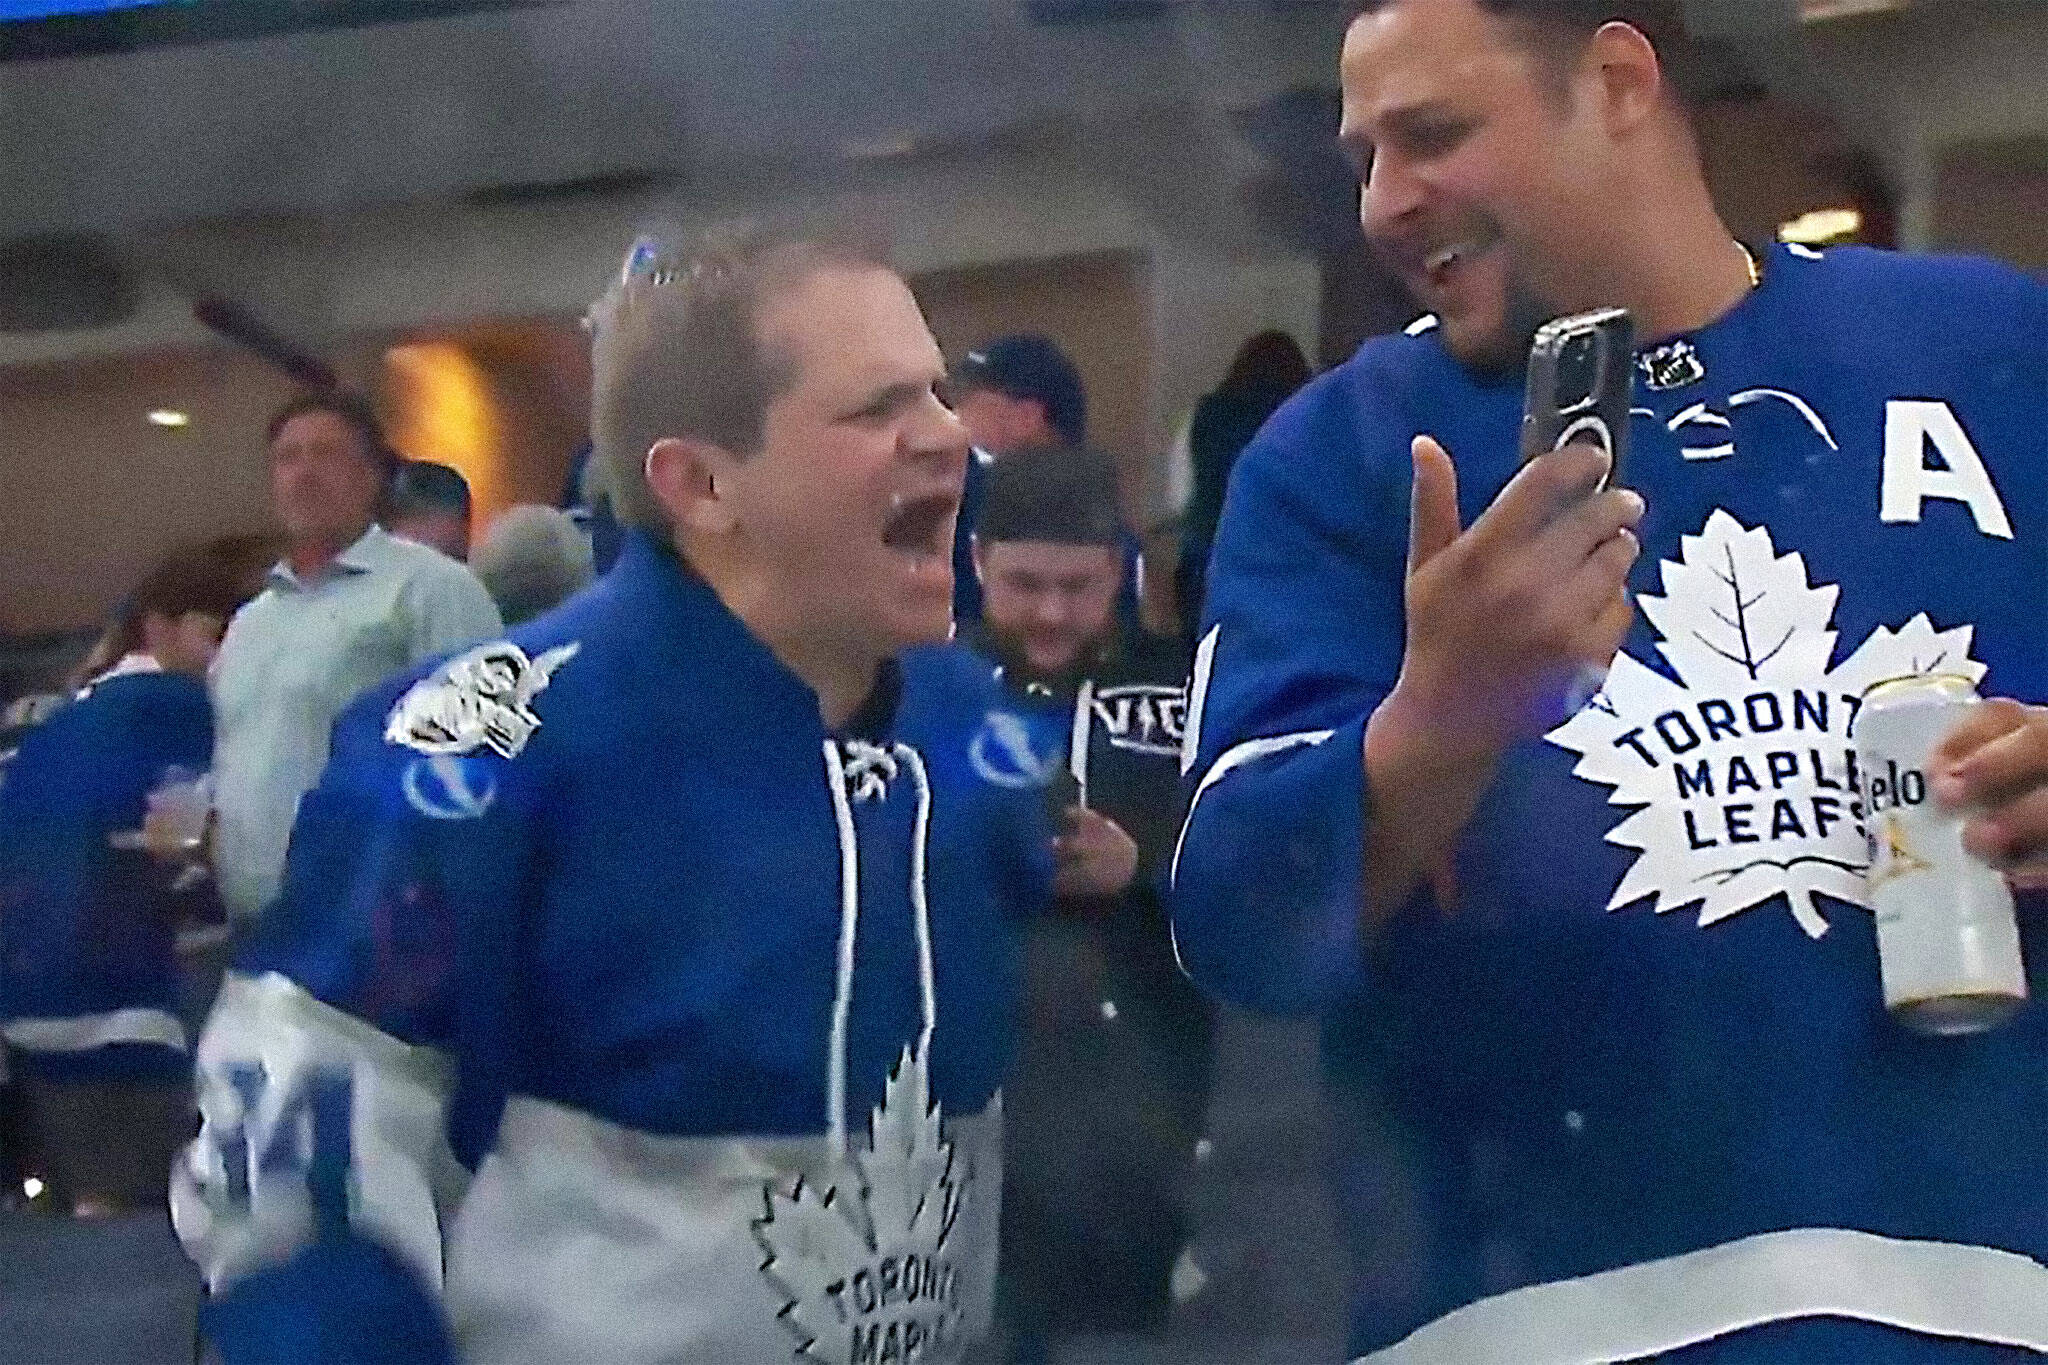 Leafs fan ecstatic over win